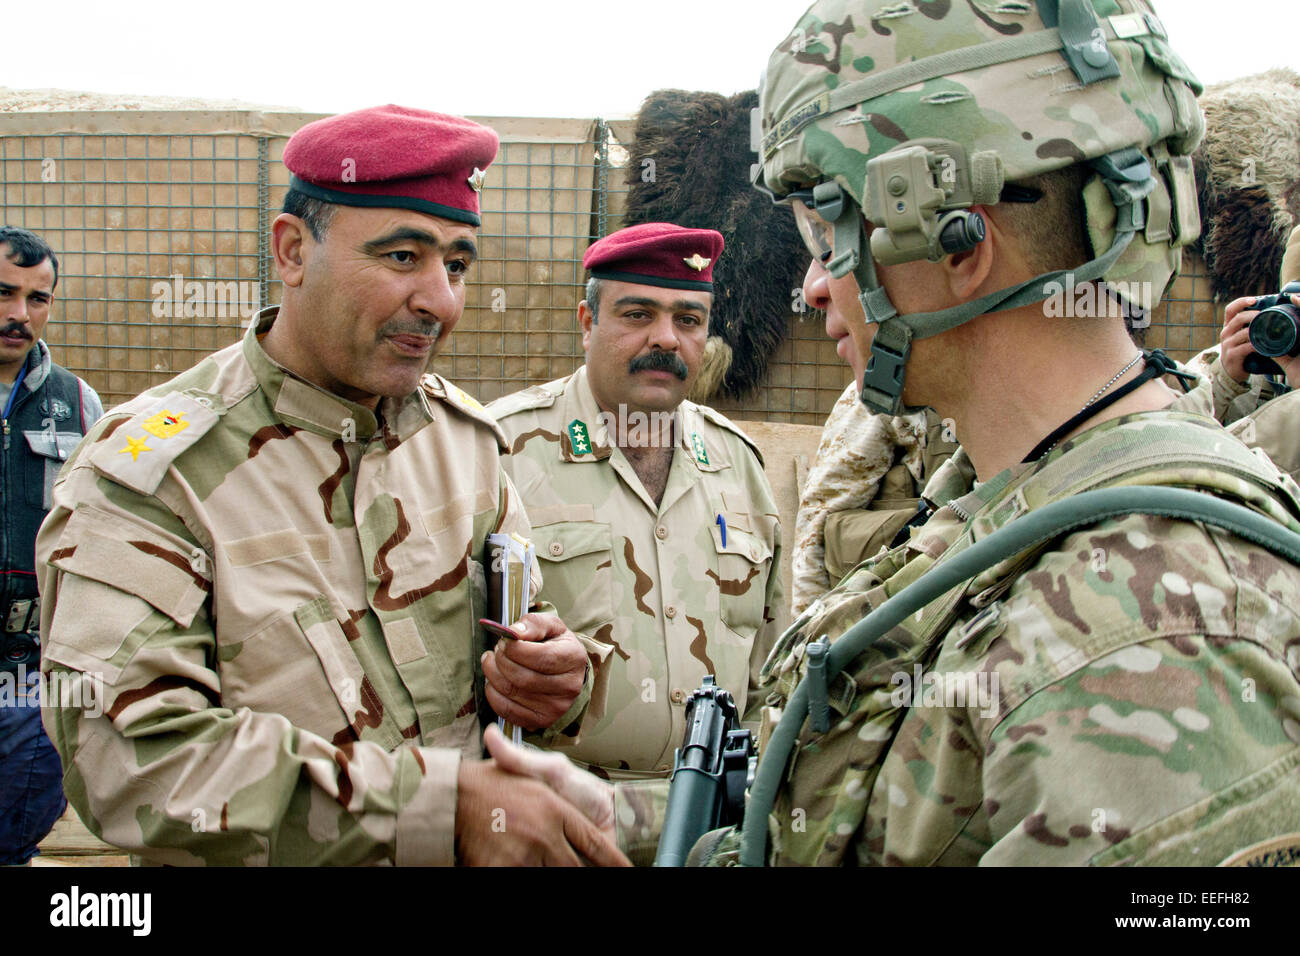 Comando del Ejército estadounidense Sgt. Gral. Michael A. Grinston un asesor de la 1ª División de Infantería, a la derecha, saluda a un oficial iraquí durante el entrenamiento de soldados del ejército iraquí de formación en la base aérea de Al Asad, 15 de enero de 2015 en Heet, Iraq. Grinston está ayudando a desarrollar el programa de formación de batallones del ejército iraquí en un esfuerzo para repeler el Estado Islámico. Foto de stock